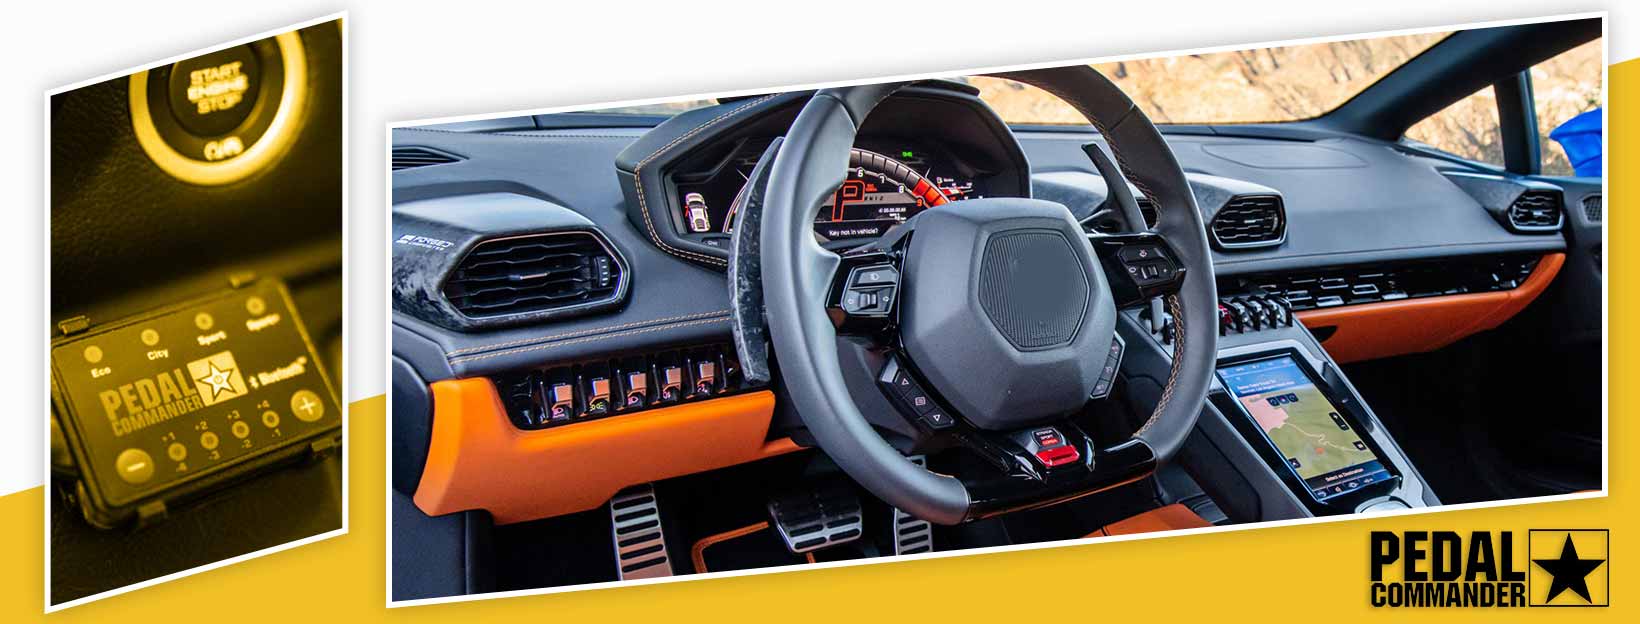 Pedal Commander for Lamborghini Huracan Evo - interior